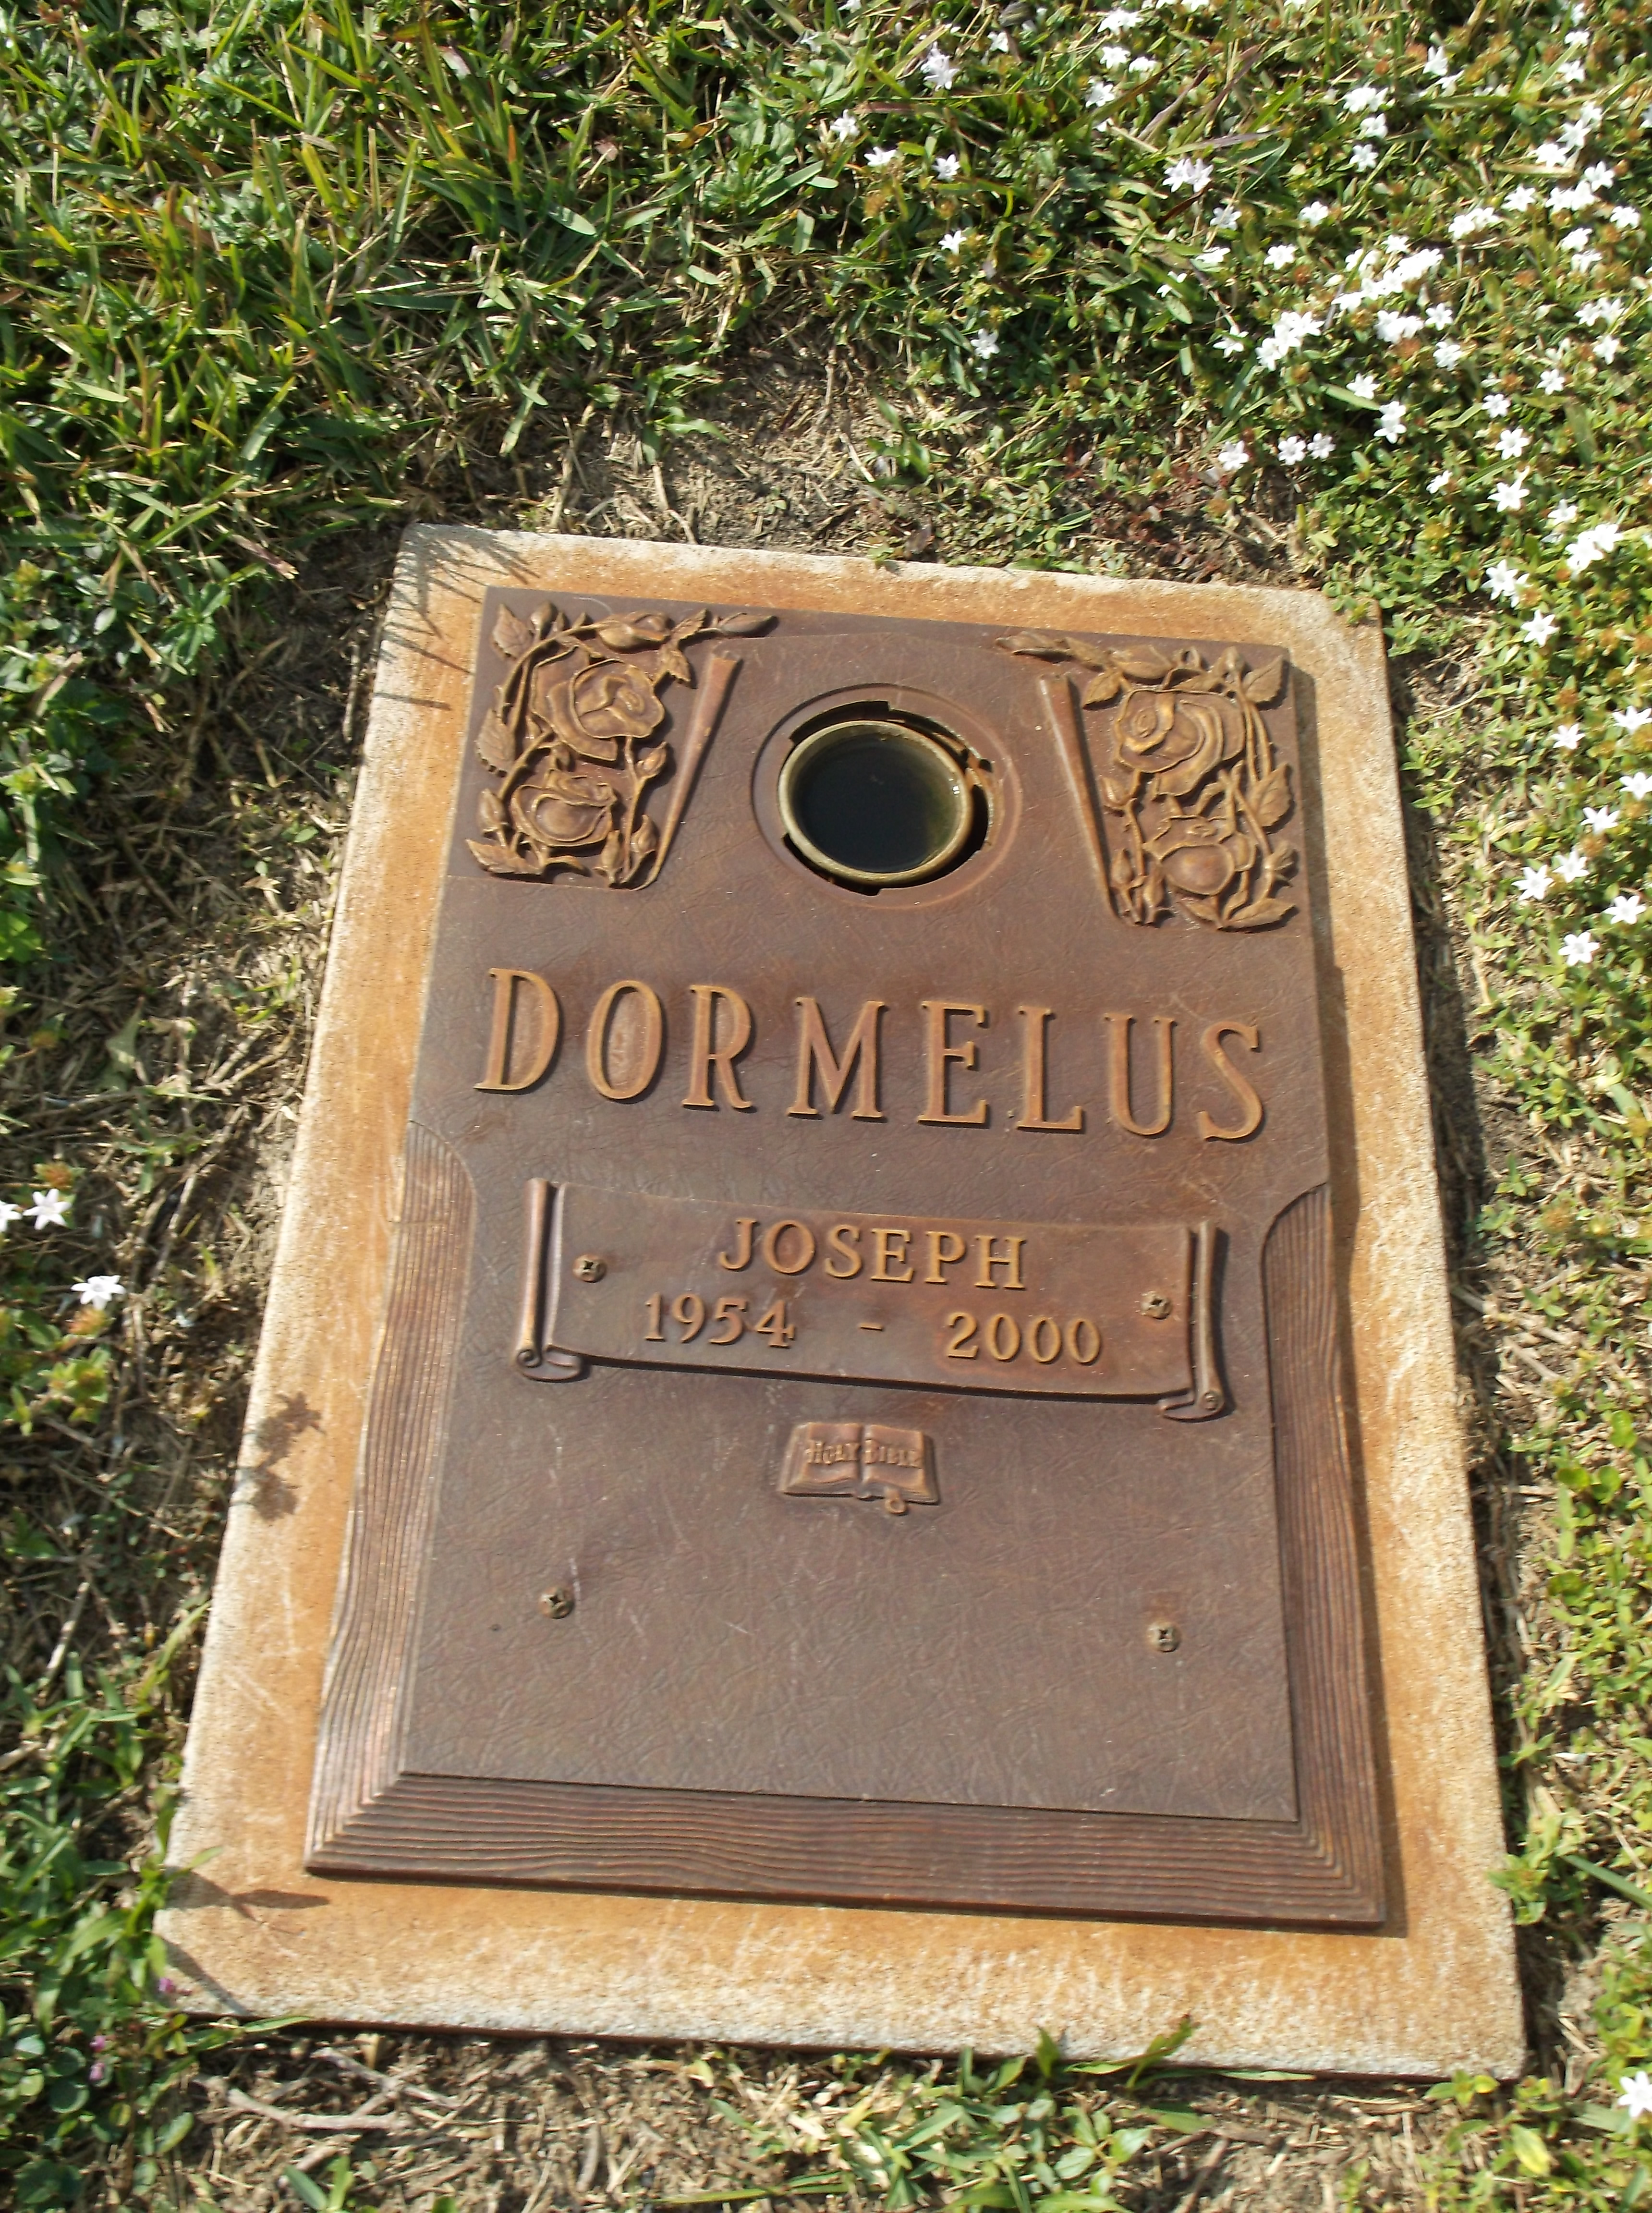 Joseph Dormelus